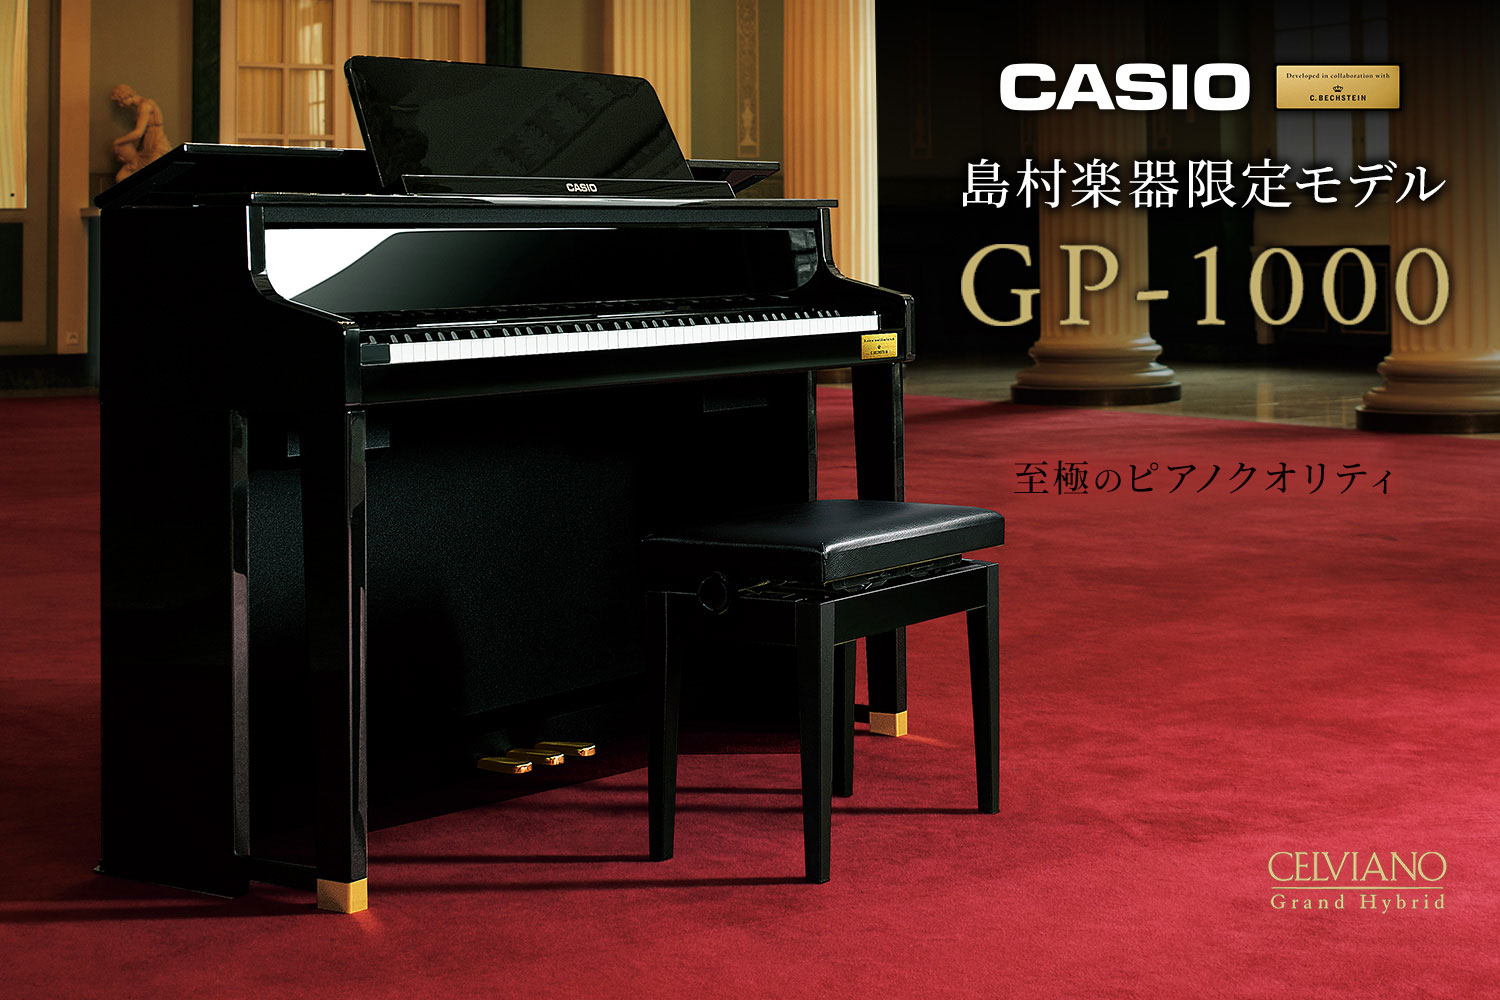 【電子ピアノ】島村楽器×CASIO コラボレーション電子ピアノ「GP-1000」